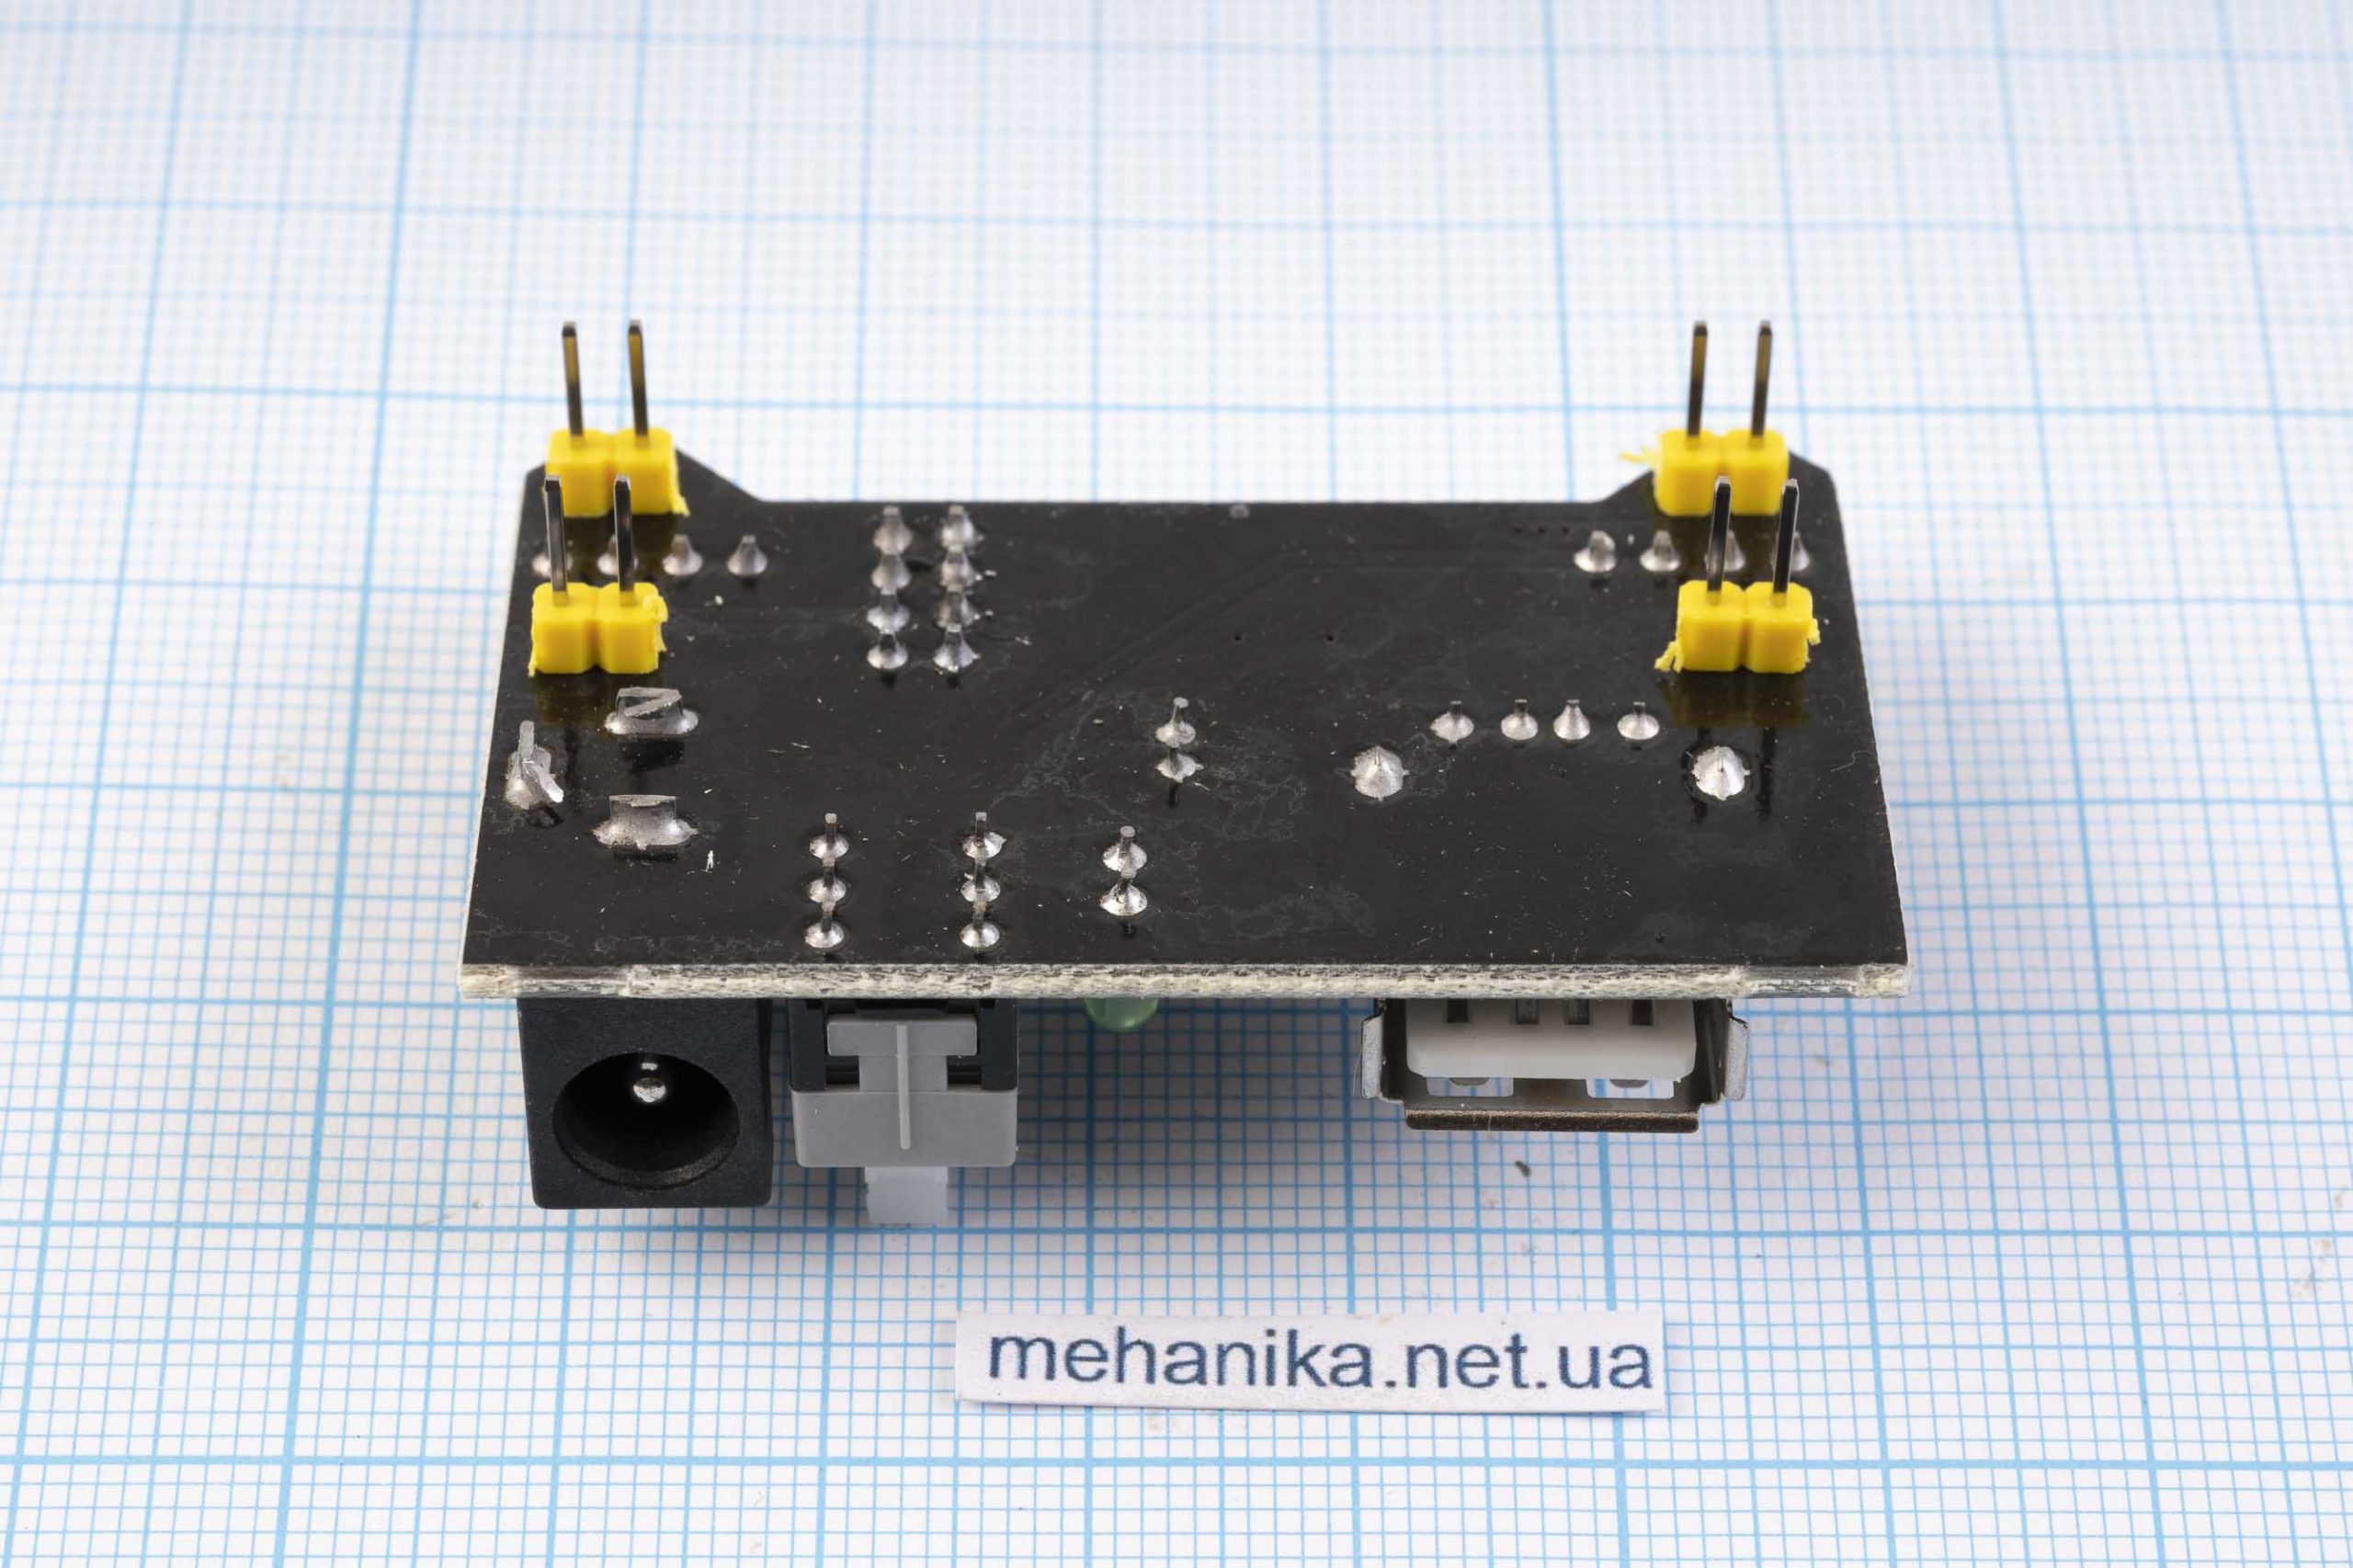 Модуль живлення макетних плат MB-102 3.3/5V, USB-A